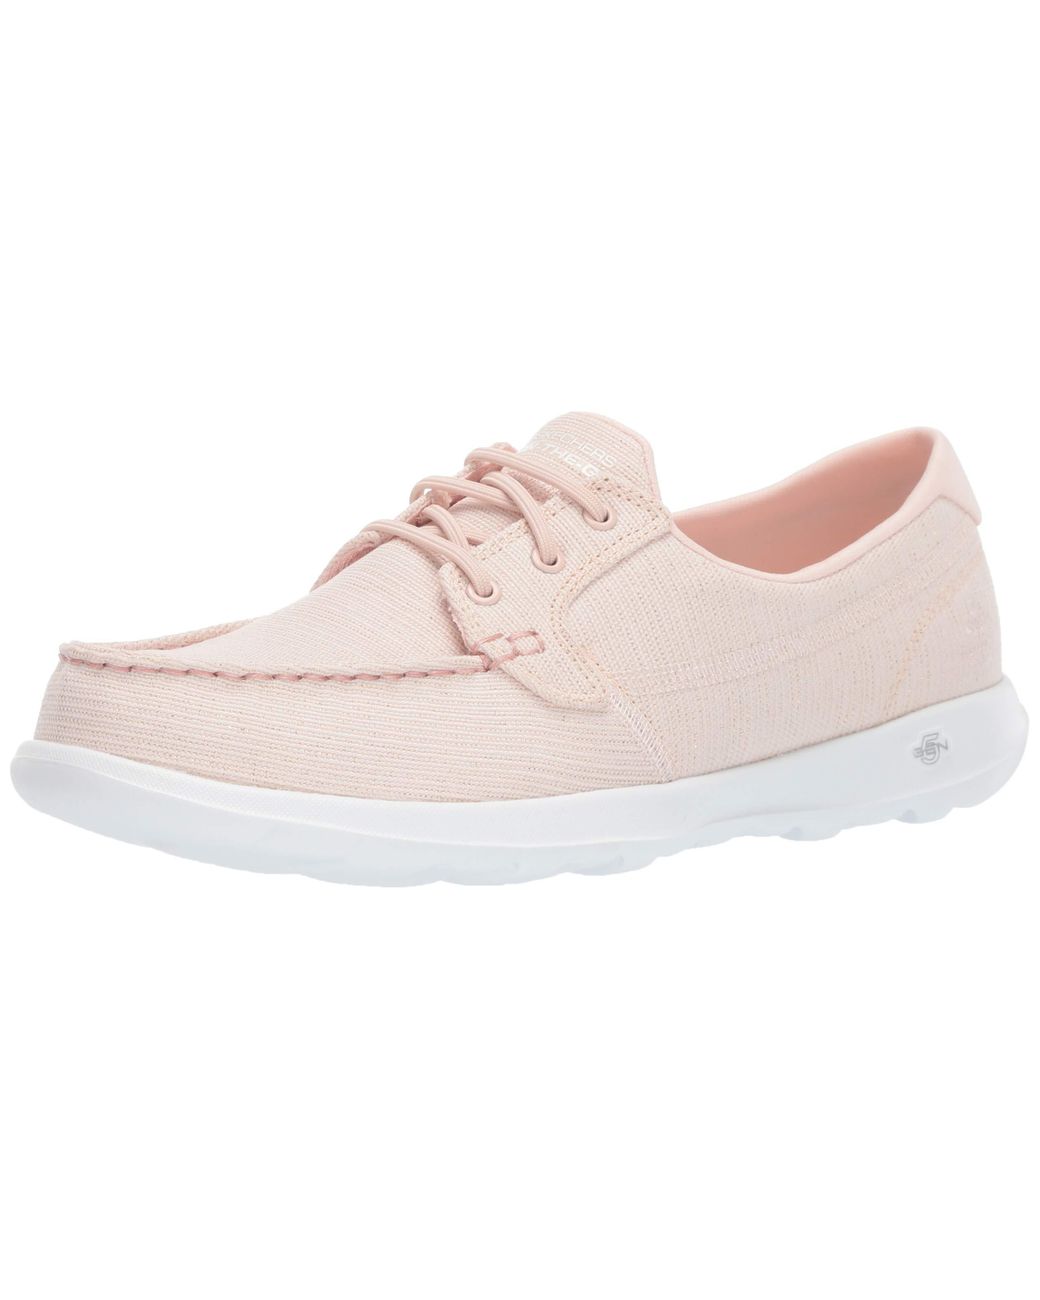 Skechers Go Walk Lite-16422 Boat Shoe in Pink | Lyst